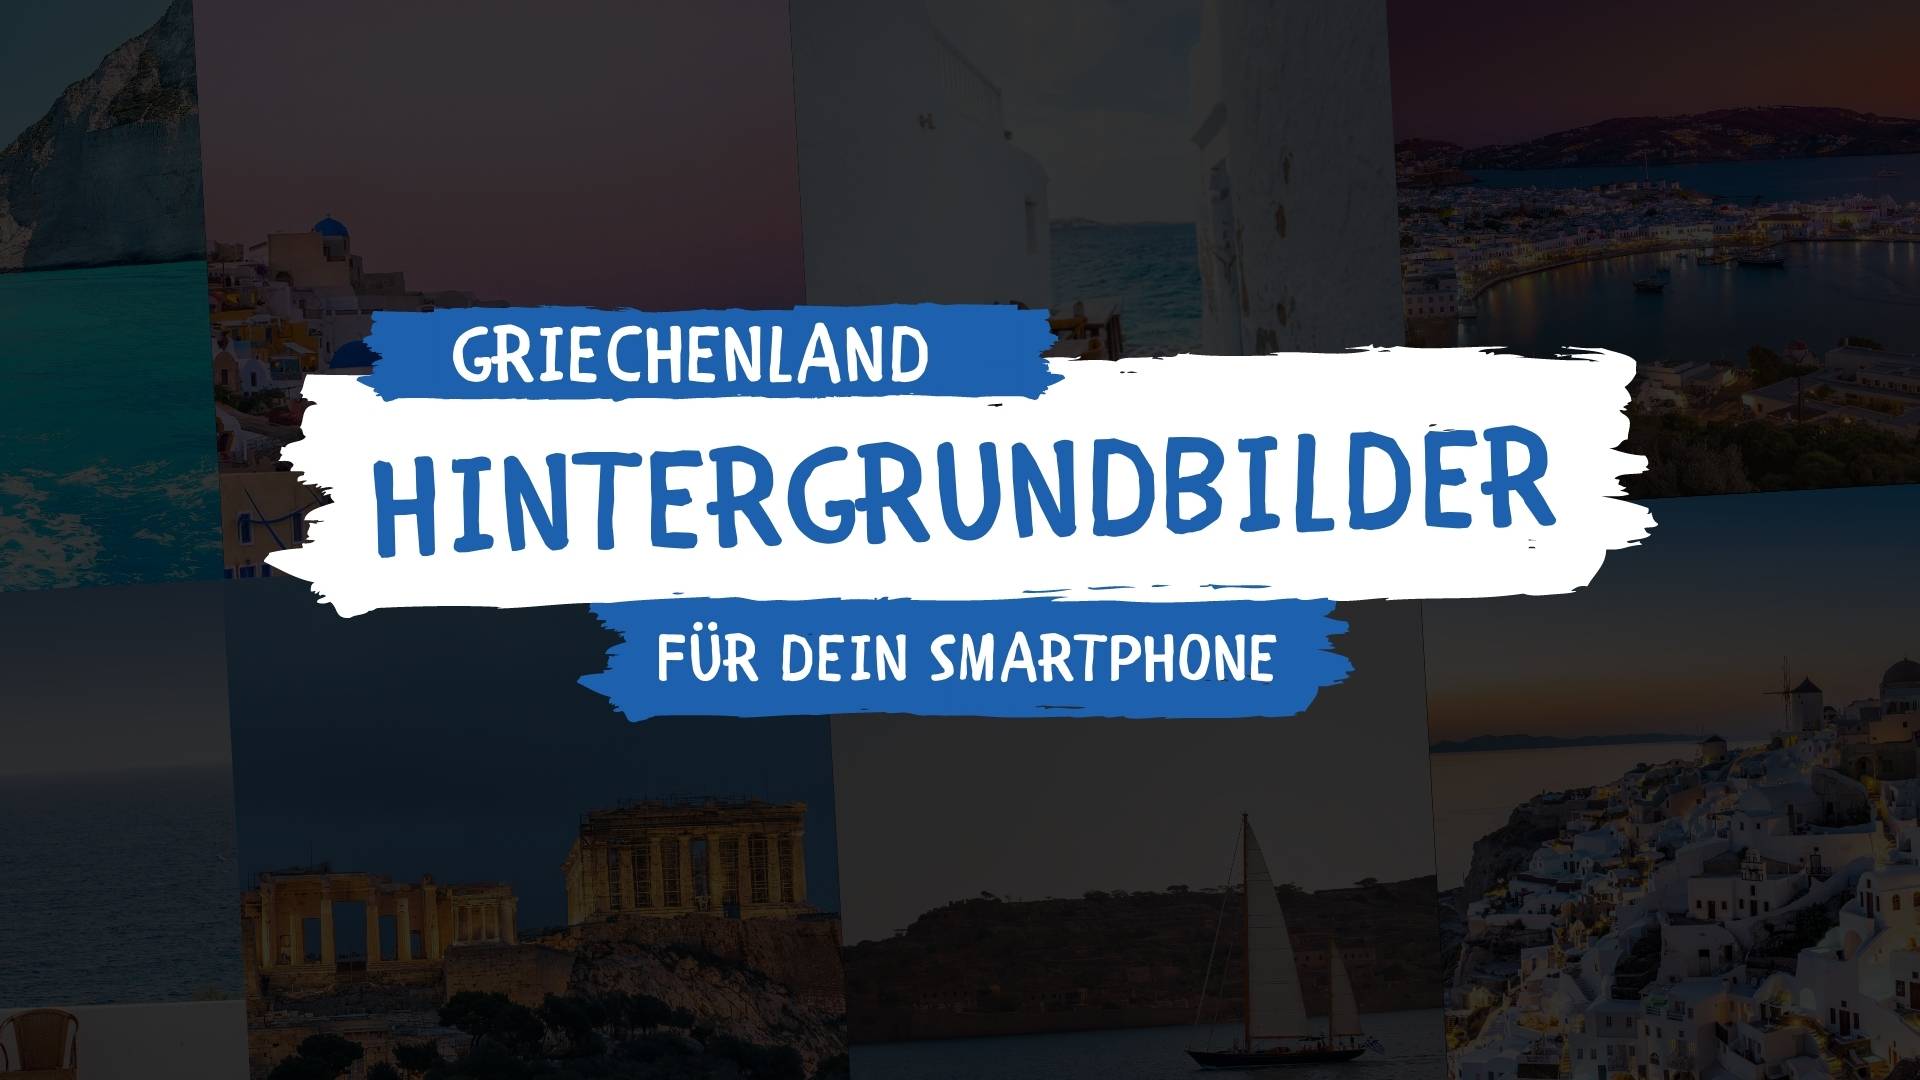 Griechenland Hintergrundbilder Smartphone kostenlos